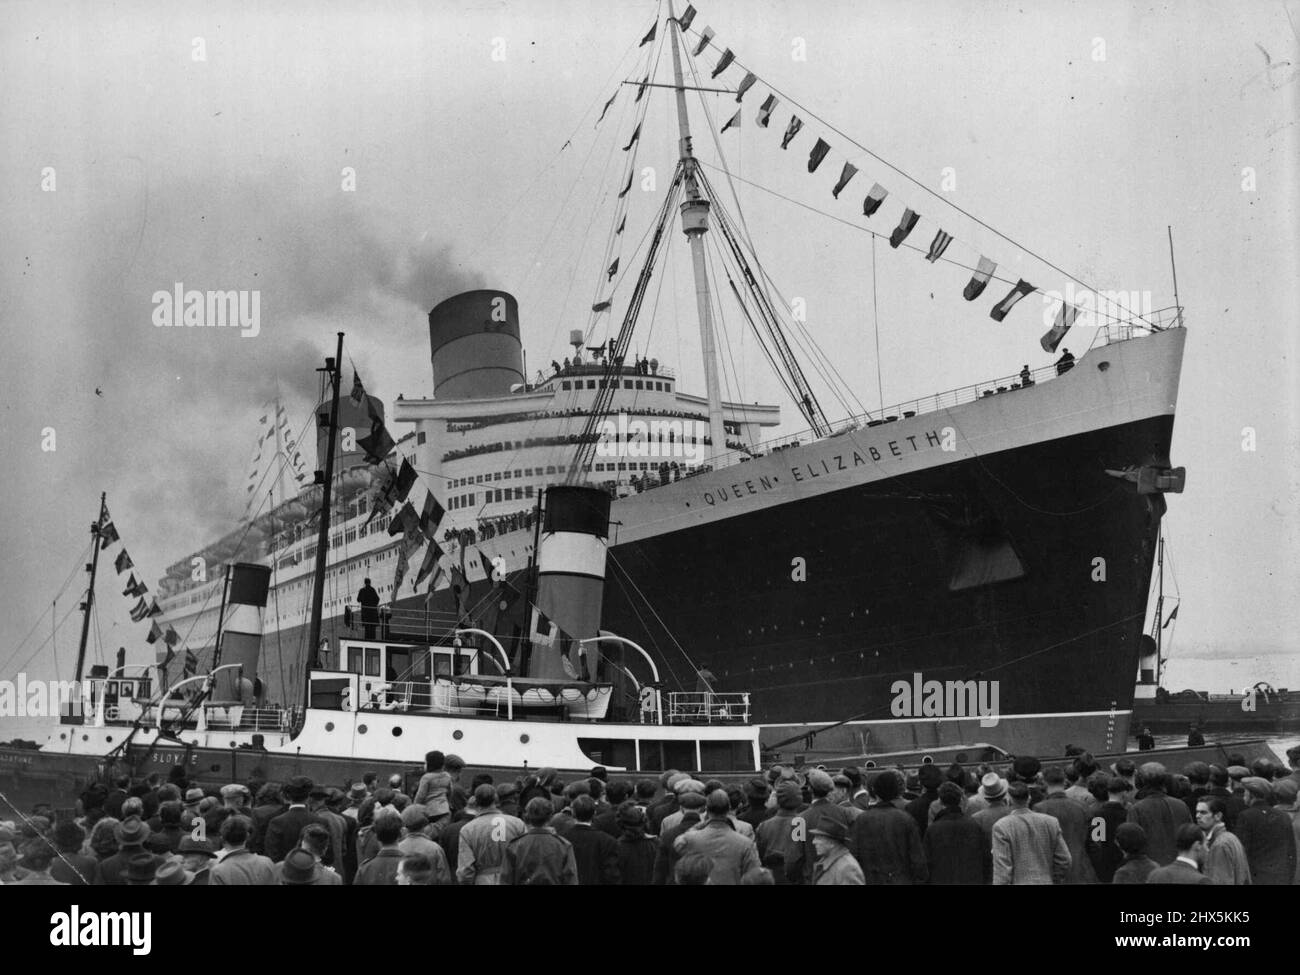 « La reine Elizabeth » va en mer -- les foules du côté du quai donnent un chaleureux envoi de la « reine Elizabeth » car, déchorée de bunkers, elle quitte son poste d'amarrage à Southampton aujourd'hui (mercredi). À seulement deux heures cet après-midi (mercredi), le paquebot de 83 000 tonnes Cunard-White Star, la reine Elizabeth, a défait ses amarrages à Southampton et s'est lentement glissé de son berth pour devenir son premier voyage passager à New York. Une grande foule se rassemblait du côté du quai a donné au navire un départ en route, d'autres navires dans l'eau de Southampton ont sonné leurs sirènes au revoir alors qu'elle s'était rassemblée. 16 octobre 1946. Banque D'Images